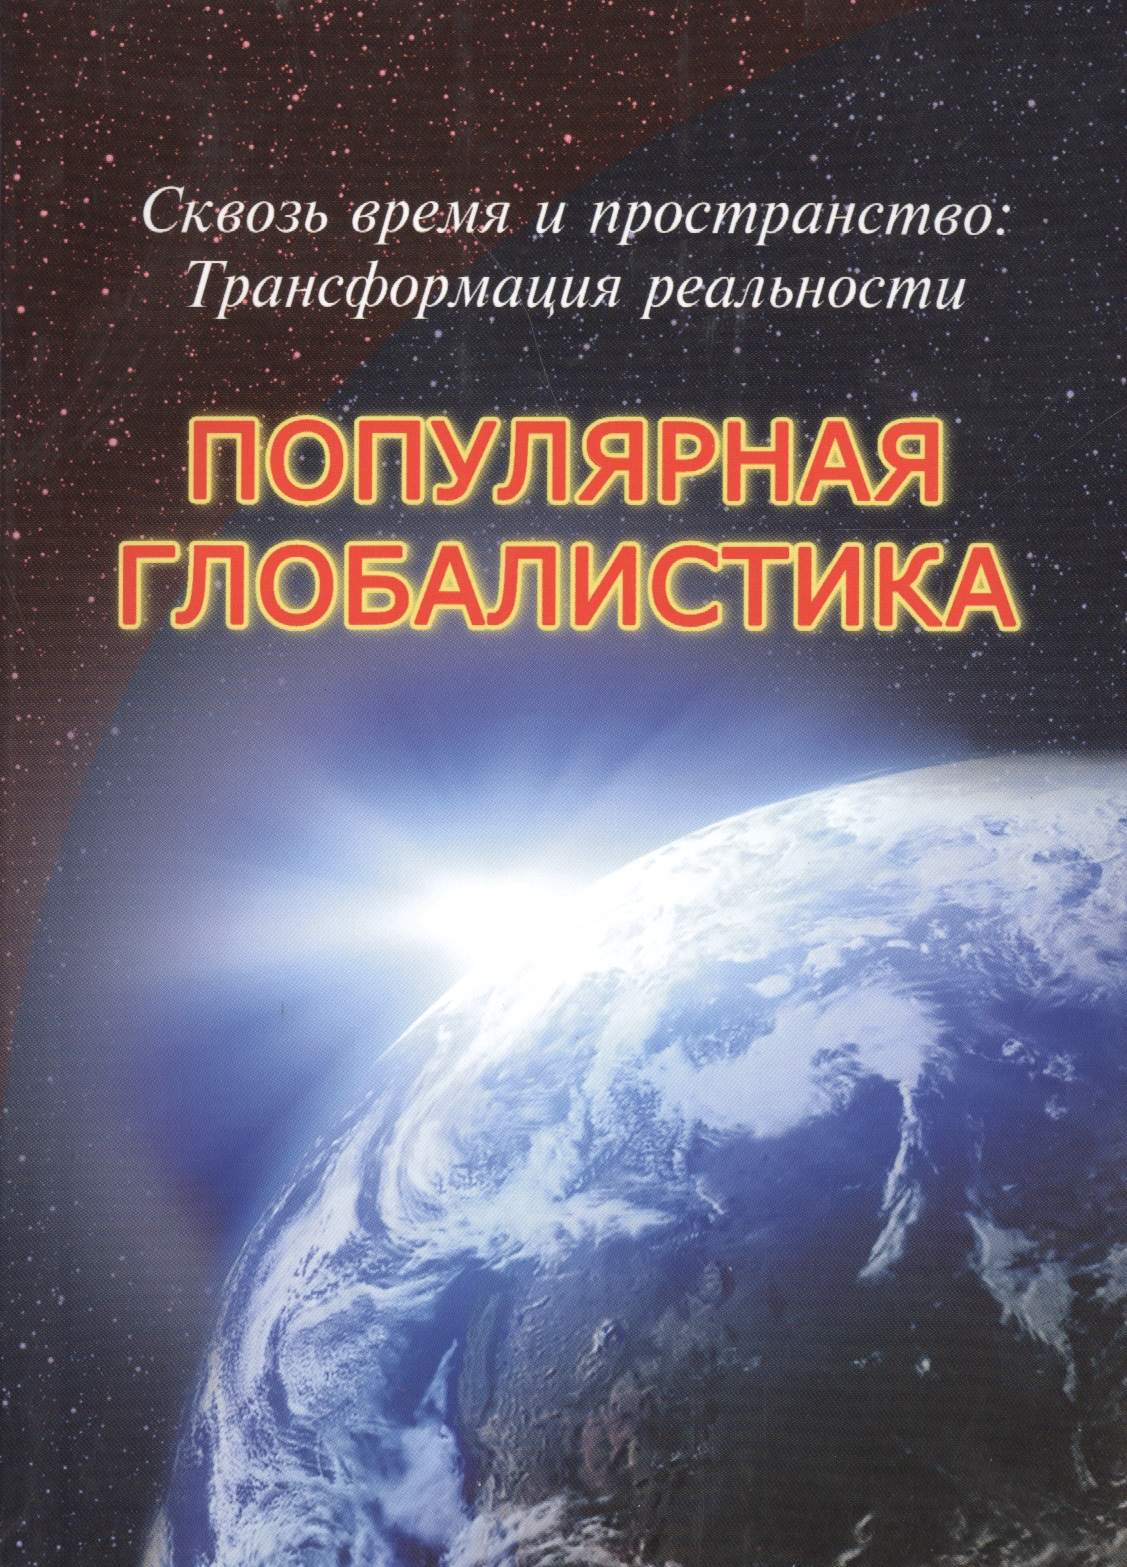 Габдуллин Руслан Рустемович Сквозь время и пространство: Трансформация реальности. Популярная глобалистика